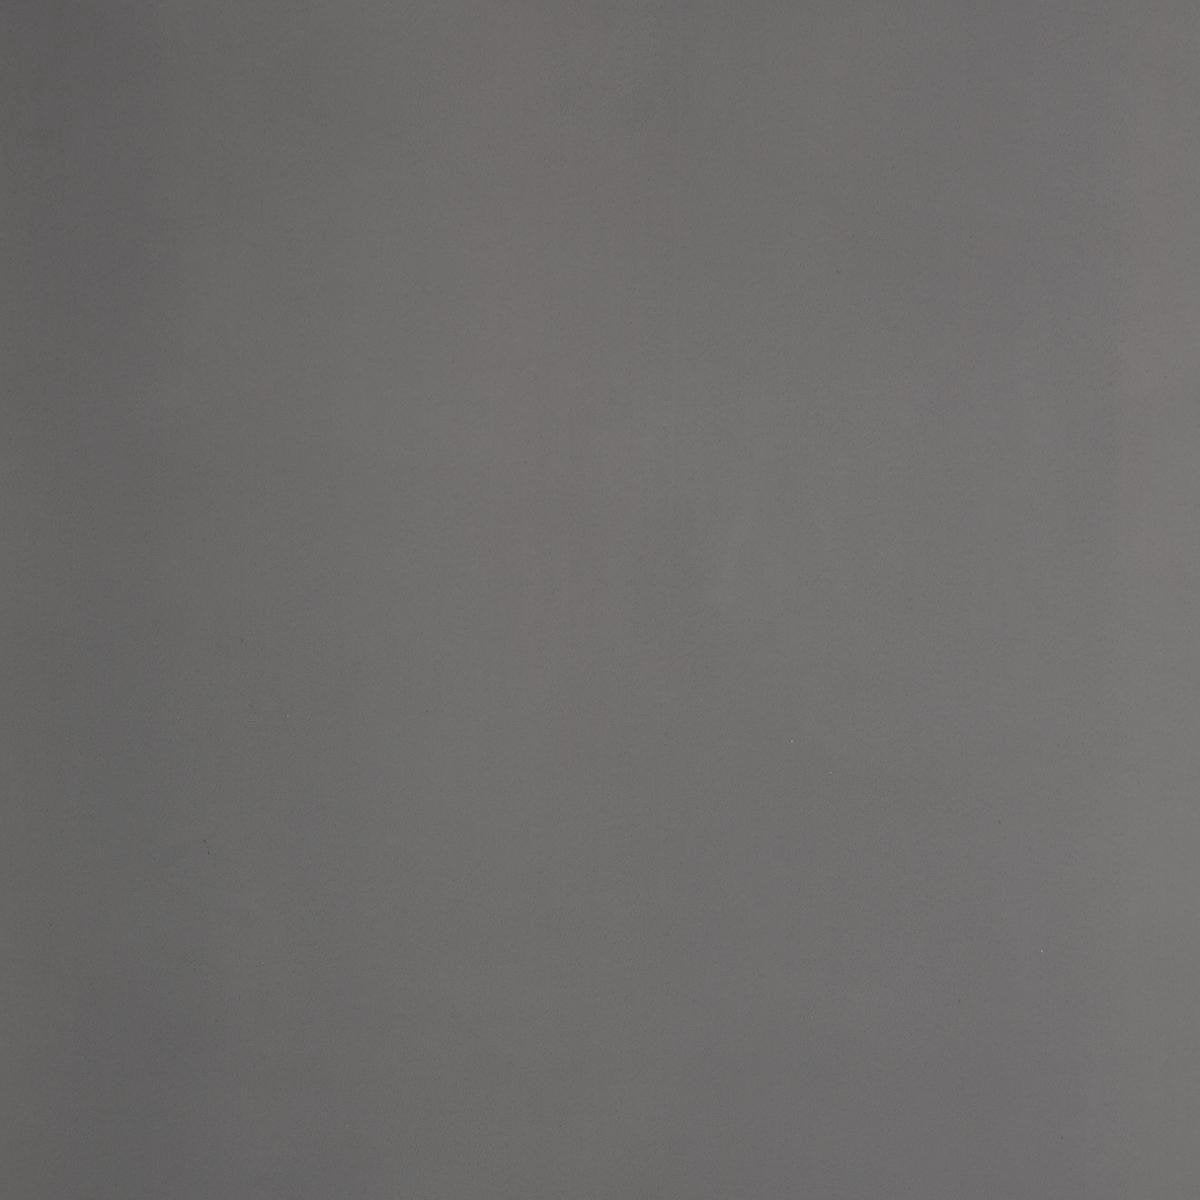 Atmosphera set van 2 Grijze verduisteringsgordijnen 135x240cm - Kant en klaar met ringen - Gordijn raambekleding - 2 stuks grijs